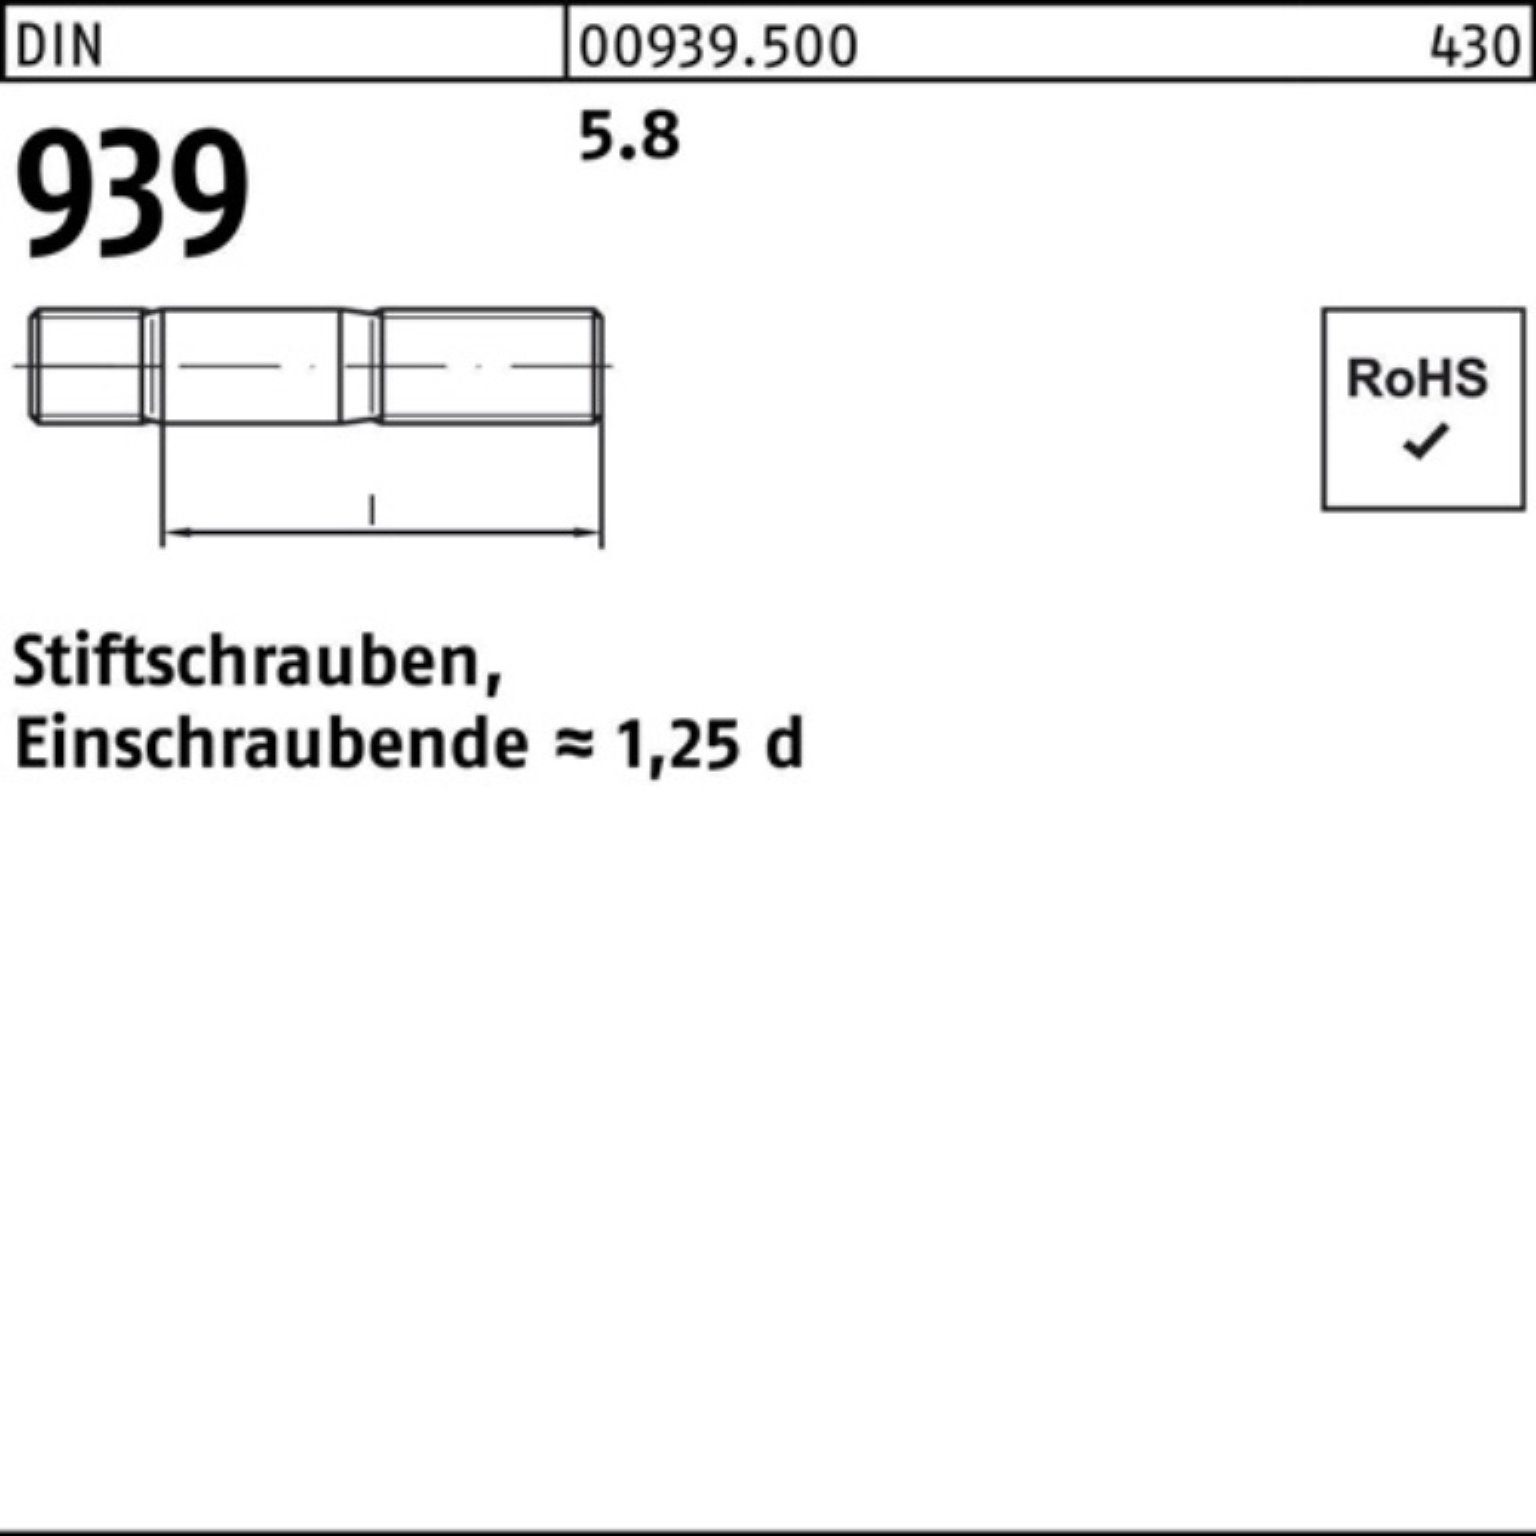 100er M10x Reyher Stiftschraube 5.8 Stiftschraube S Einschraubende=1,25d 90 Pack 939 DIN 50